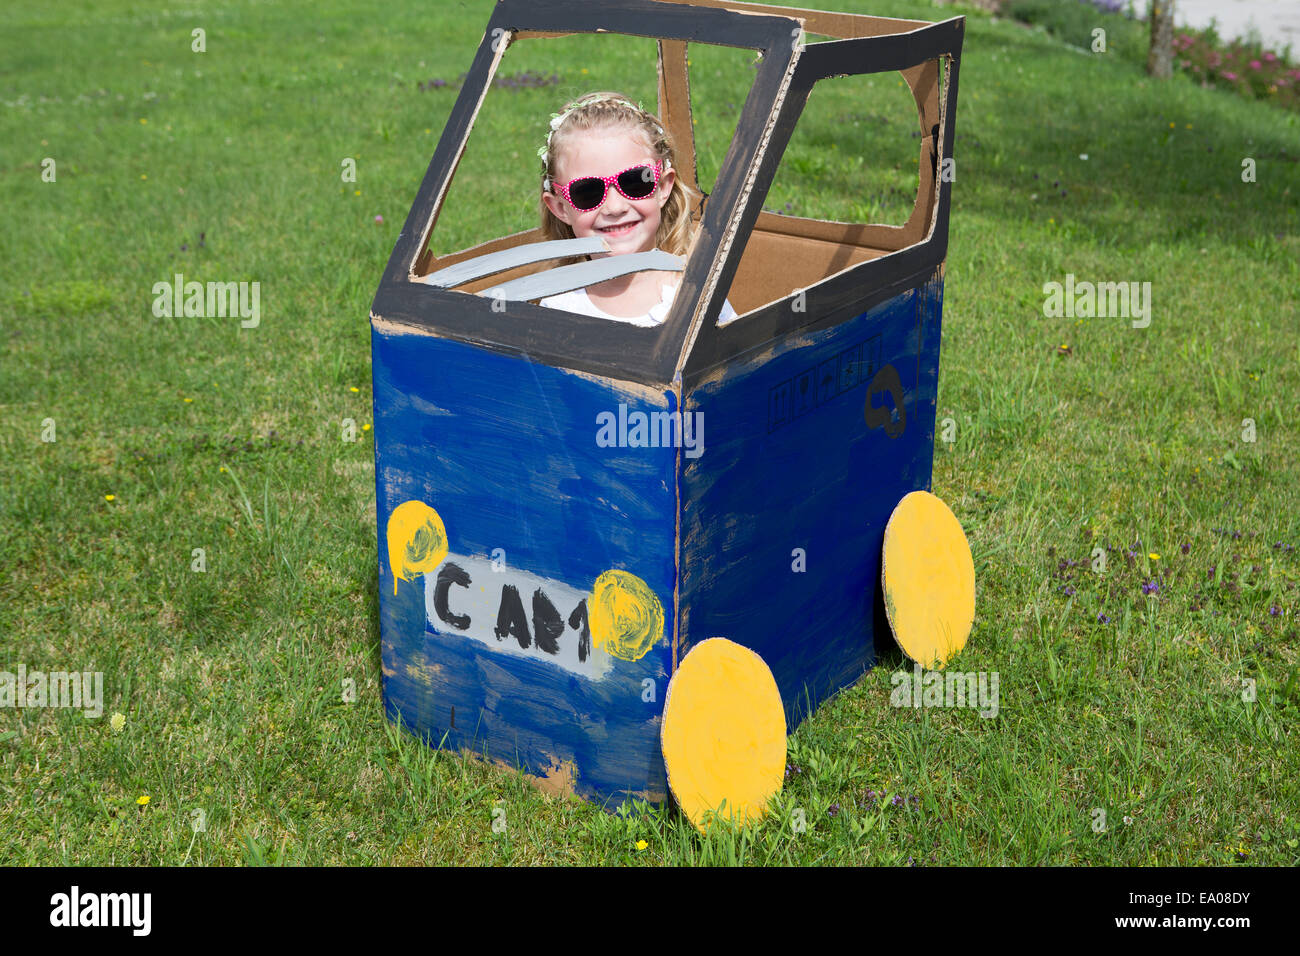 Fille jouant dans des petite voiture Banque D'Images